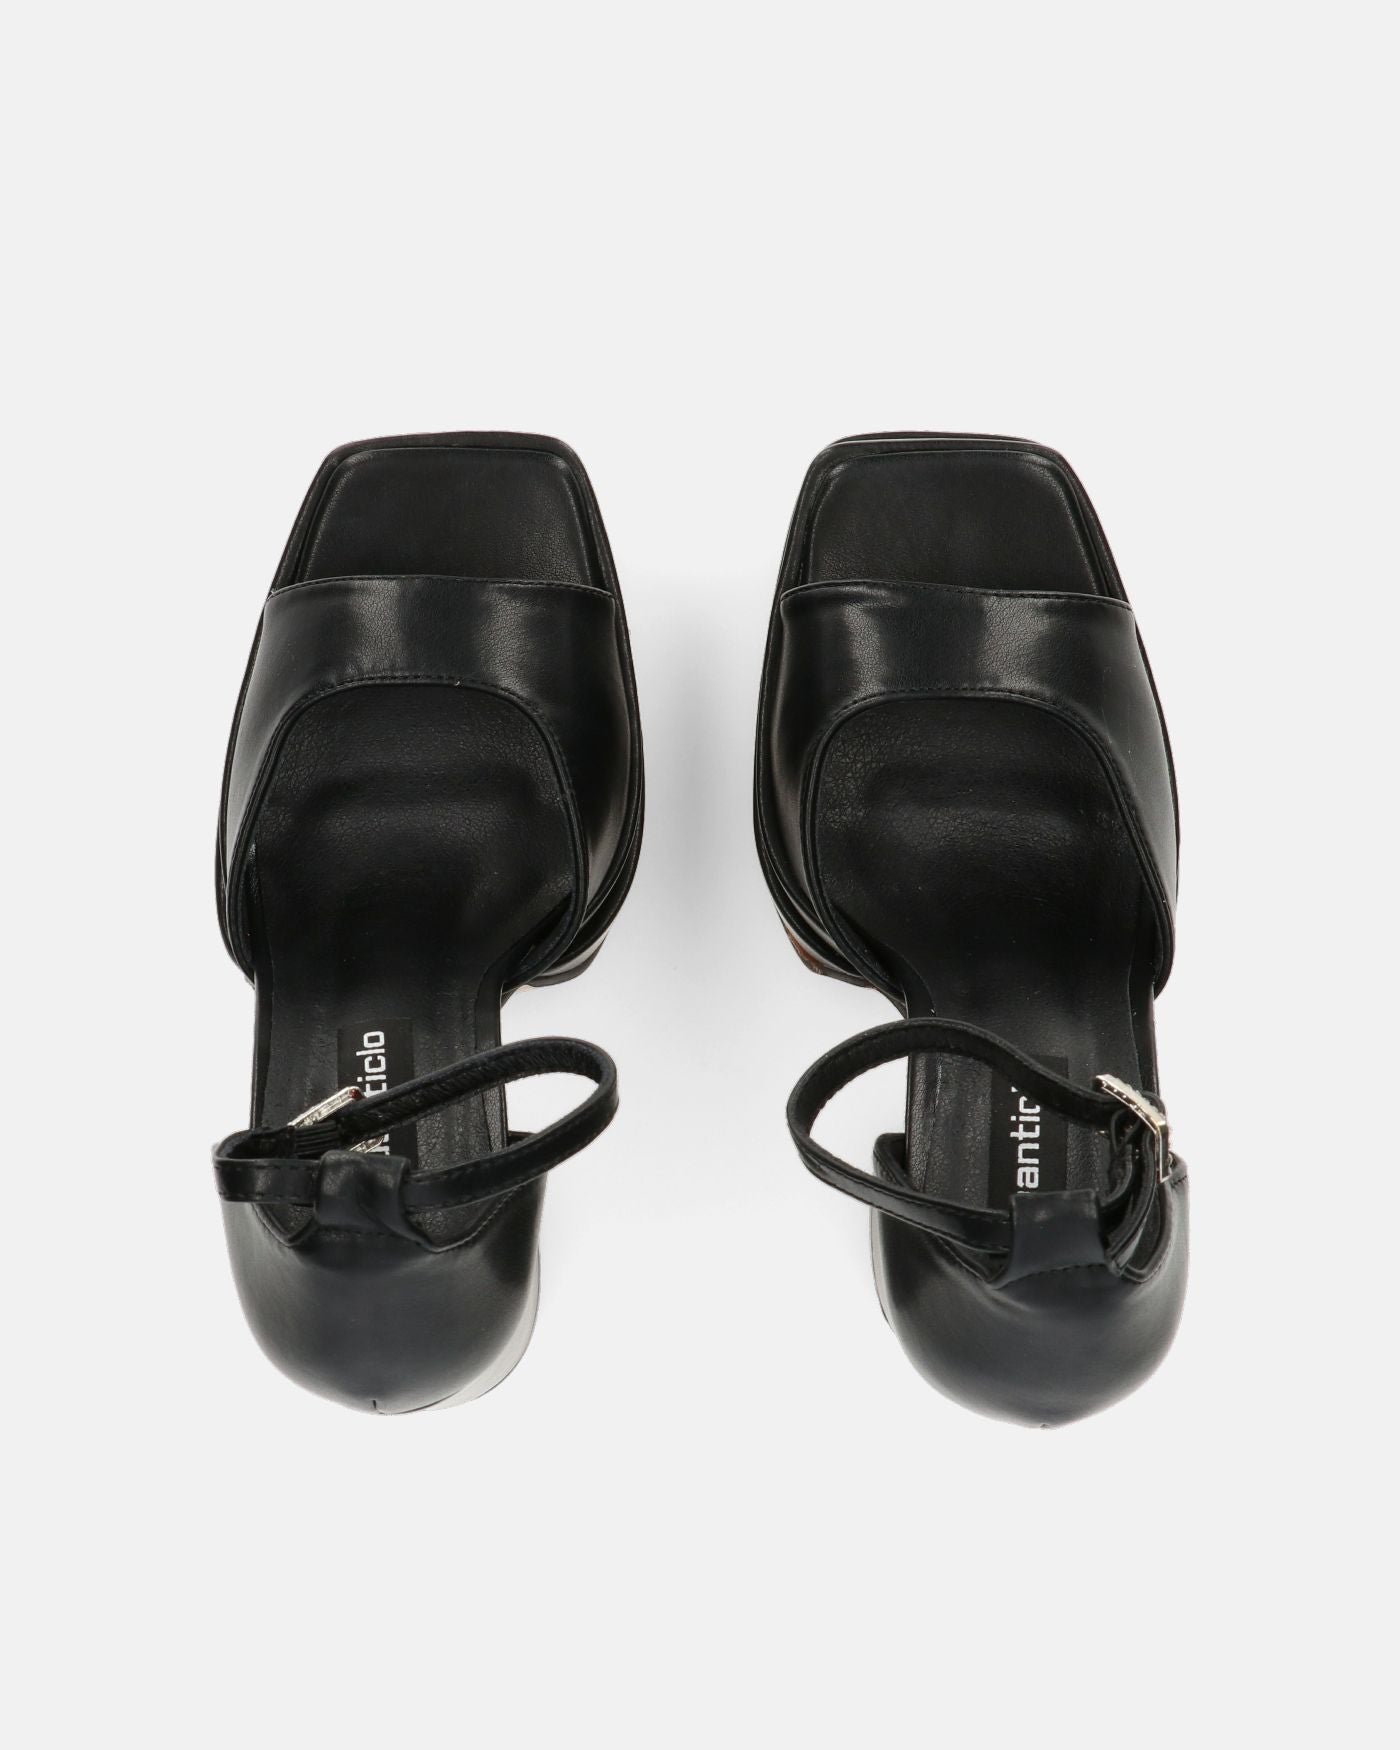 AVA - sandali con tacchi alti in ecopelle nera e gemme nel cinturino